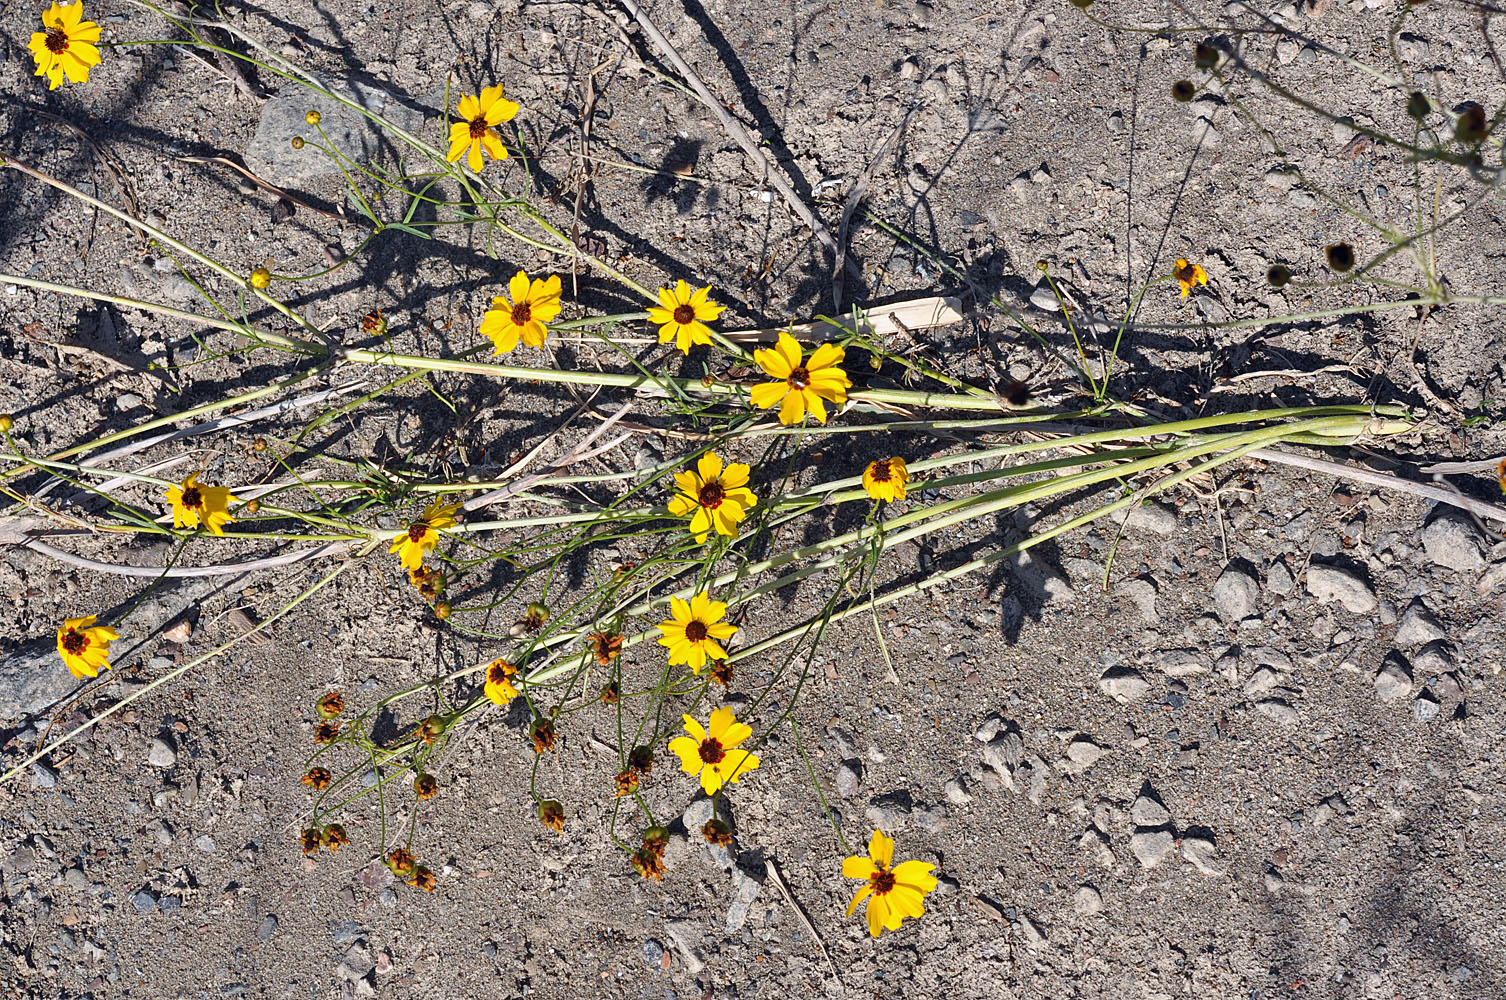 Flora of Eastern Washington Image: Coreopsis tinctoria